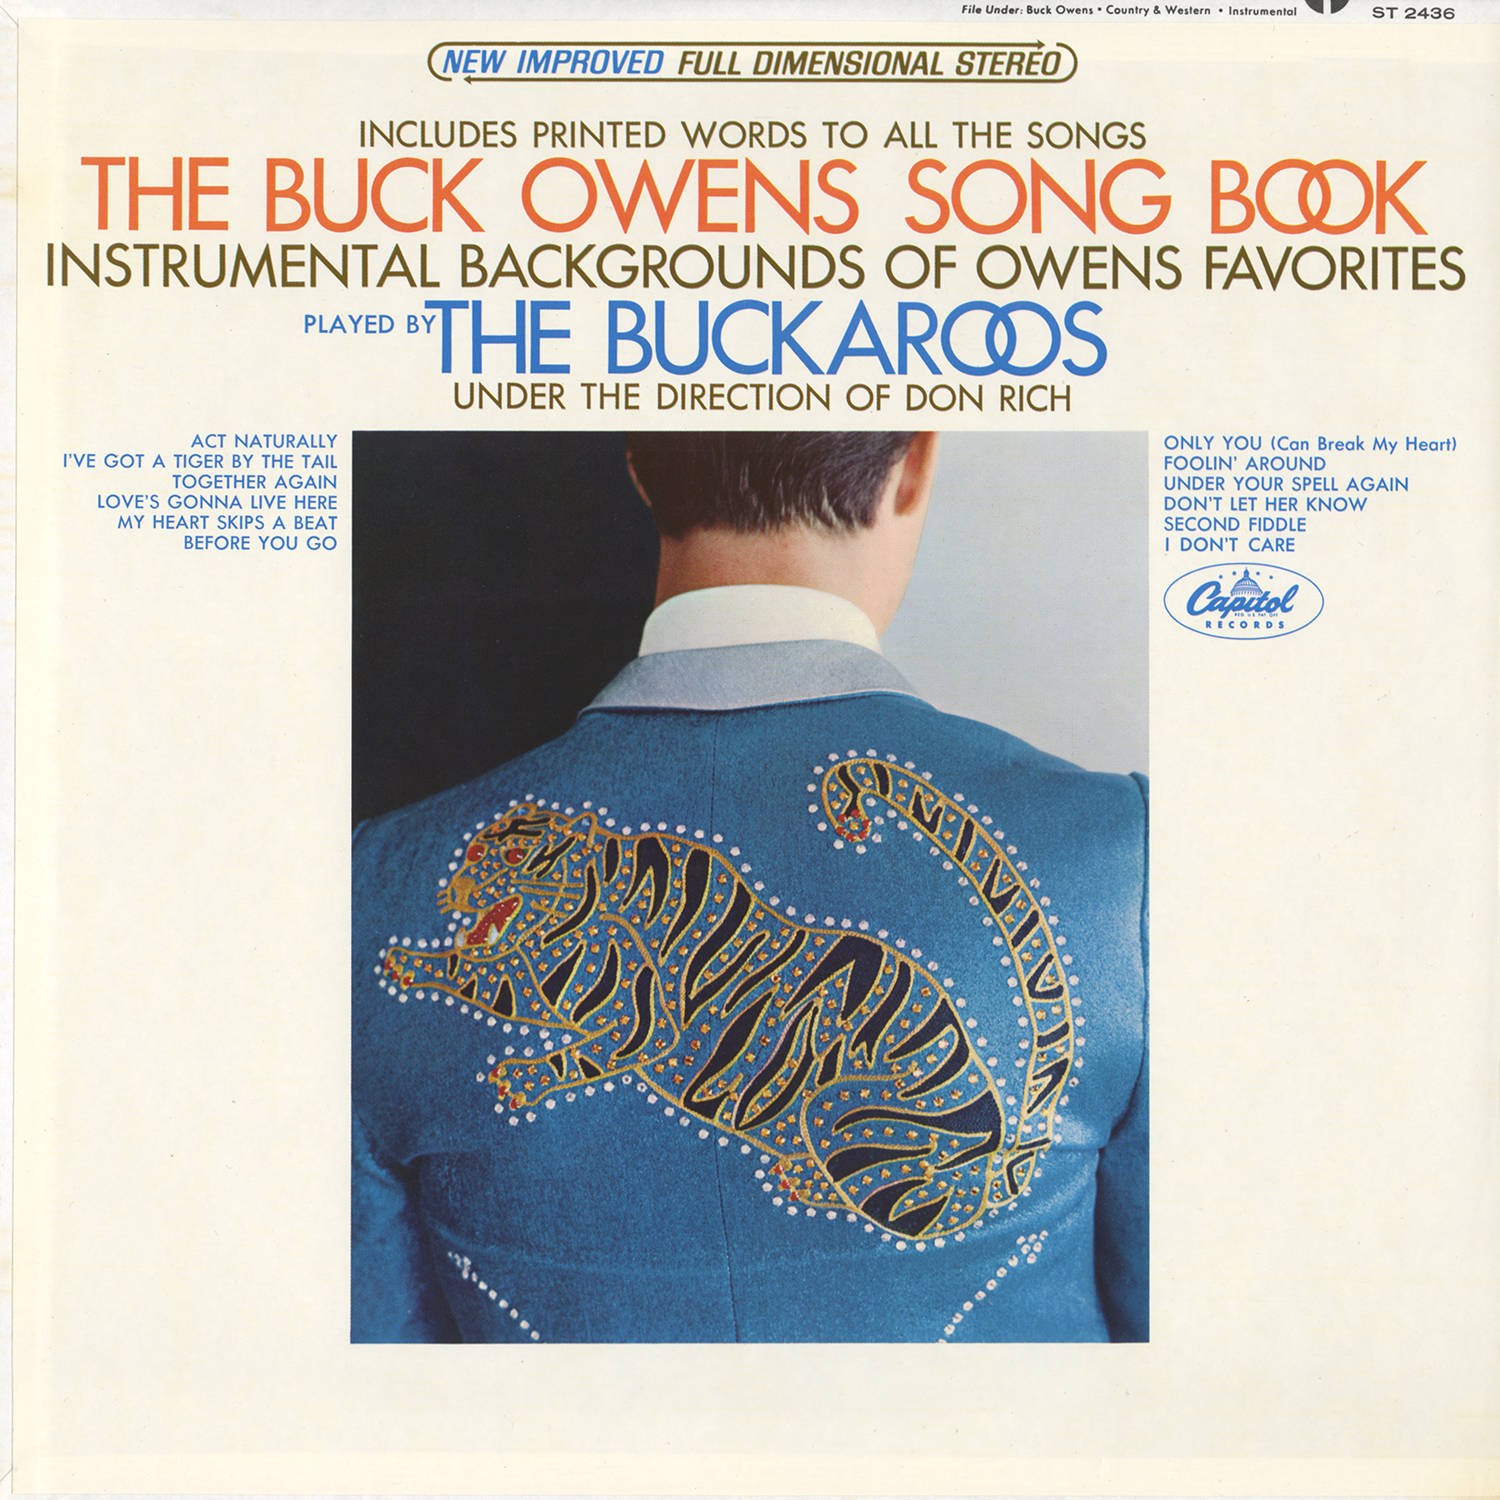 Buck Owens' Buckaroos - America’s Most Wanted Band Vintage Vinyl.